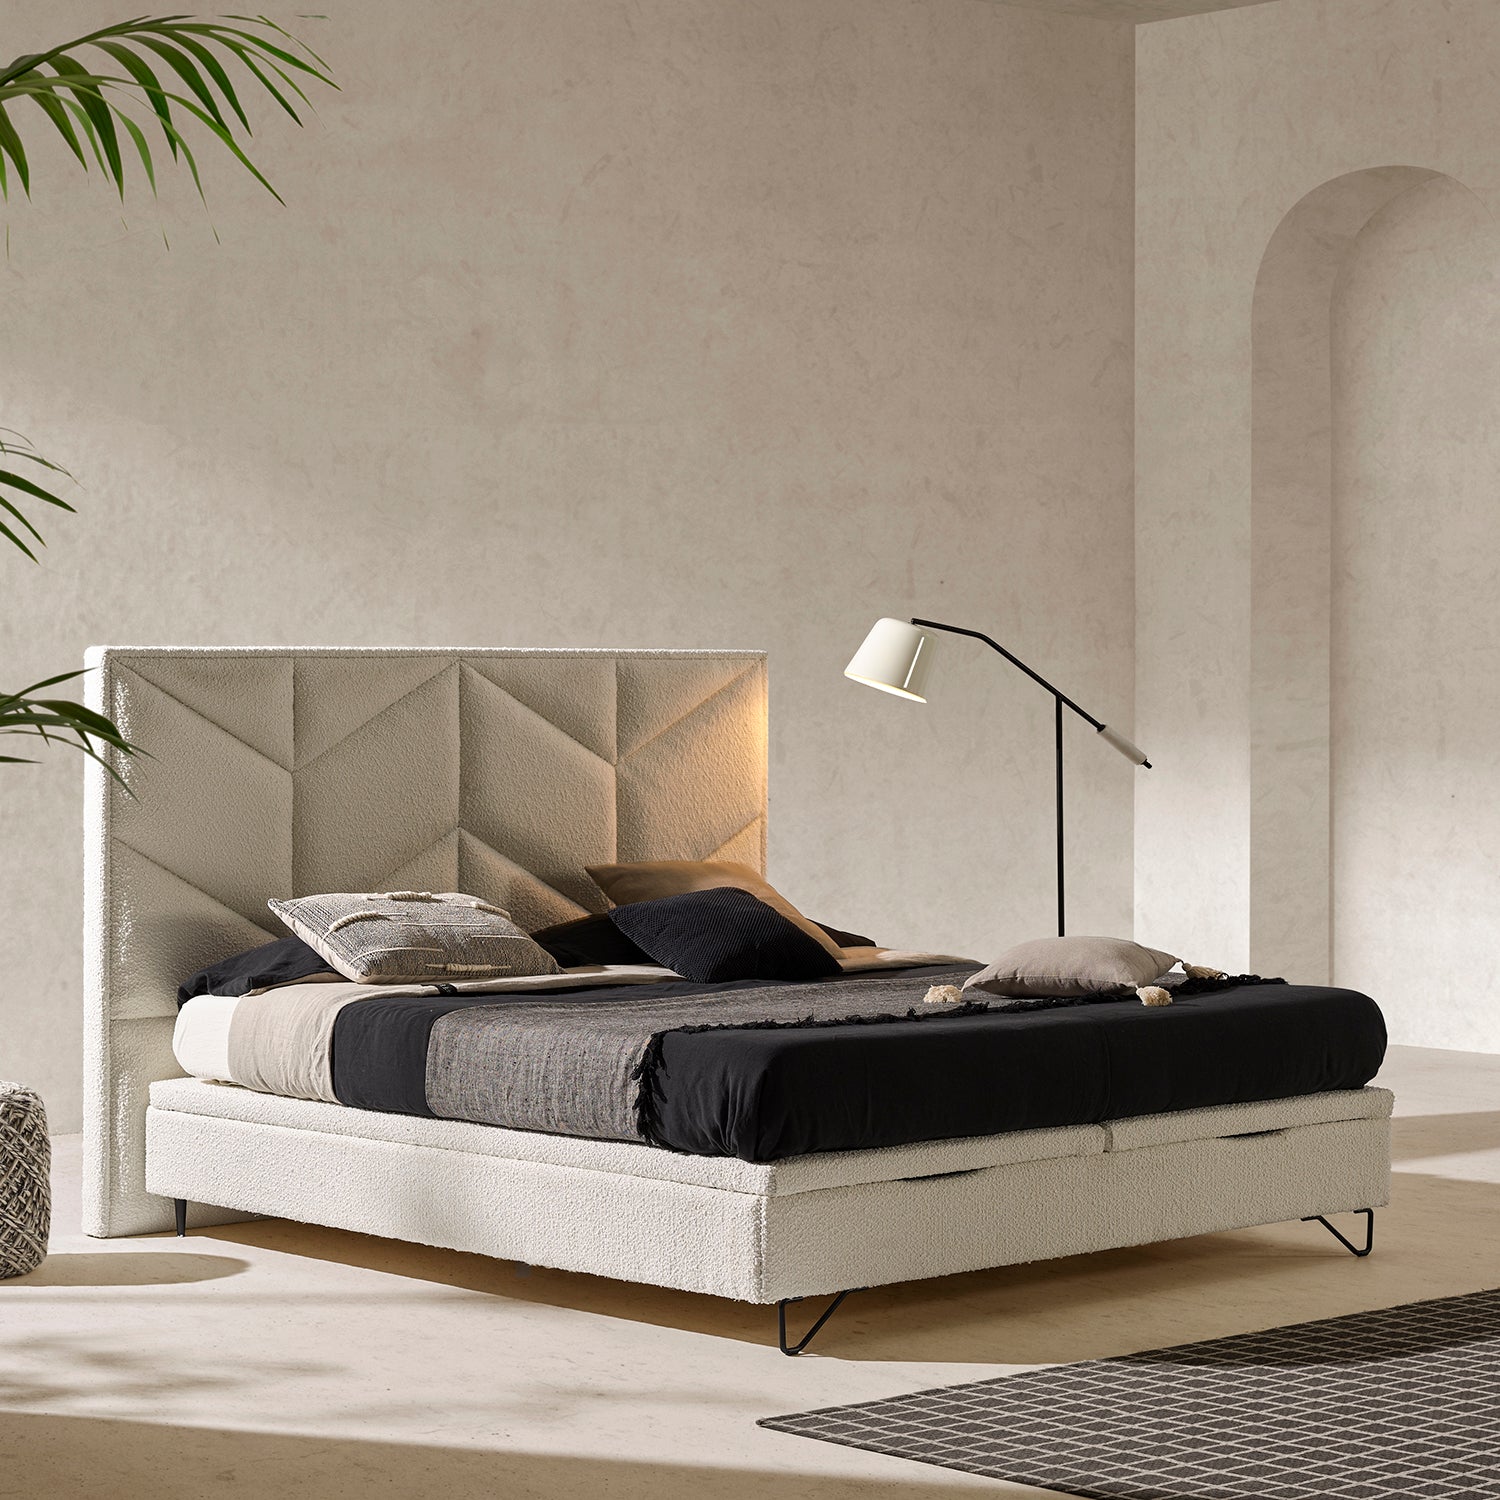 Cama moderna y minimalista con juego de cama de lino negro y plaid jaspeado.